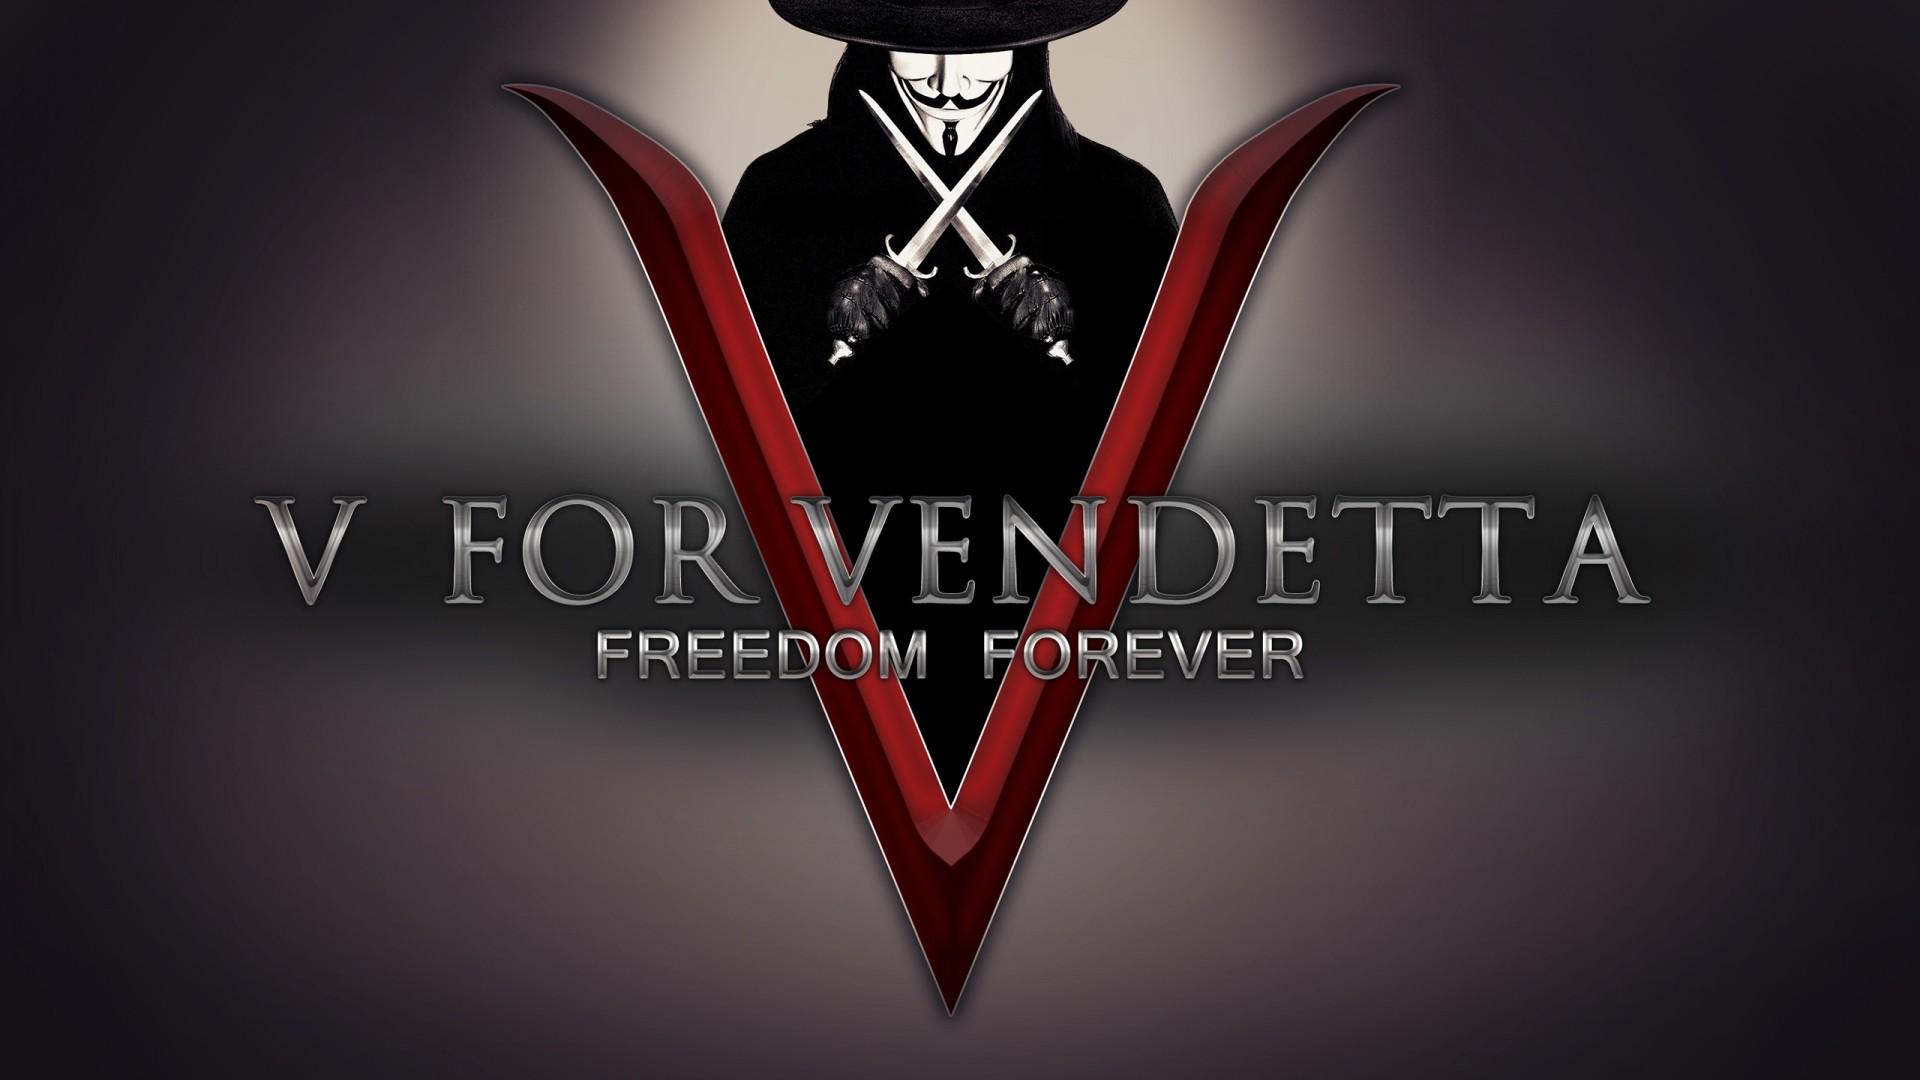 Vendetta Mask Wallpaper - Freedom Forever V For Vendetta - HD Wallpaper 